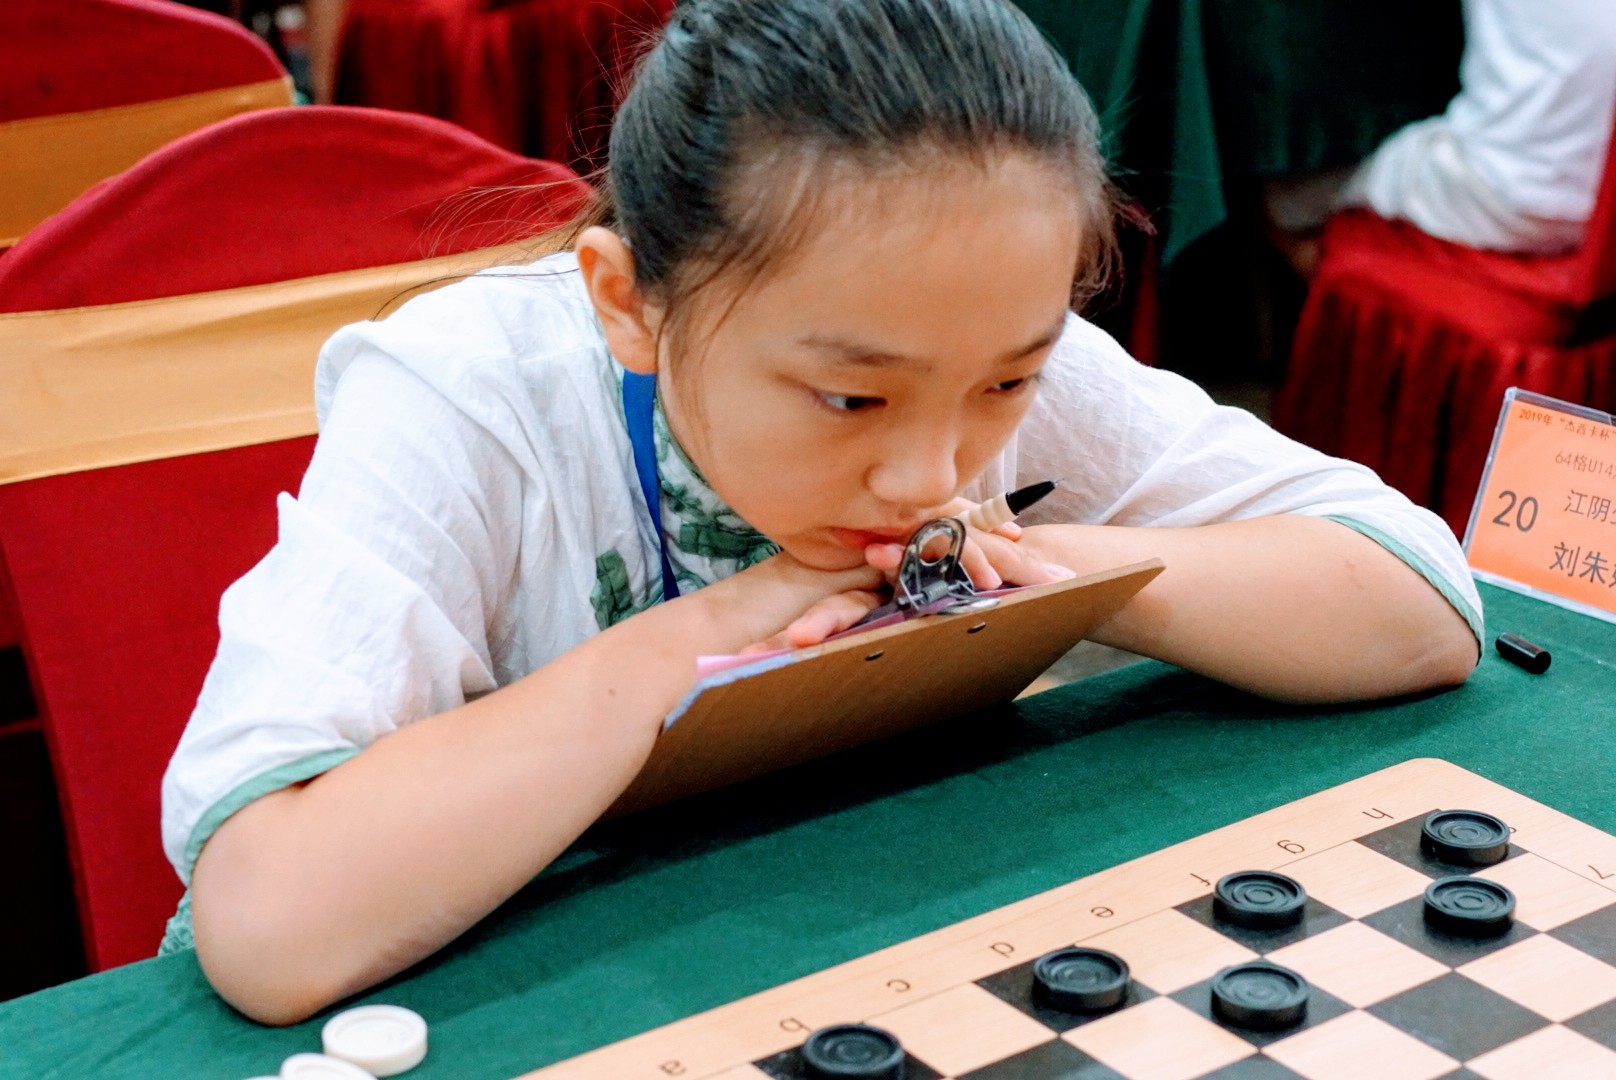 2019年“杰西卡杯”少年国际跳棋